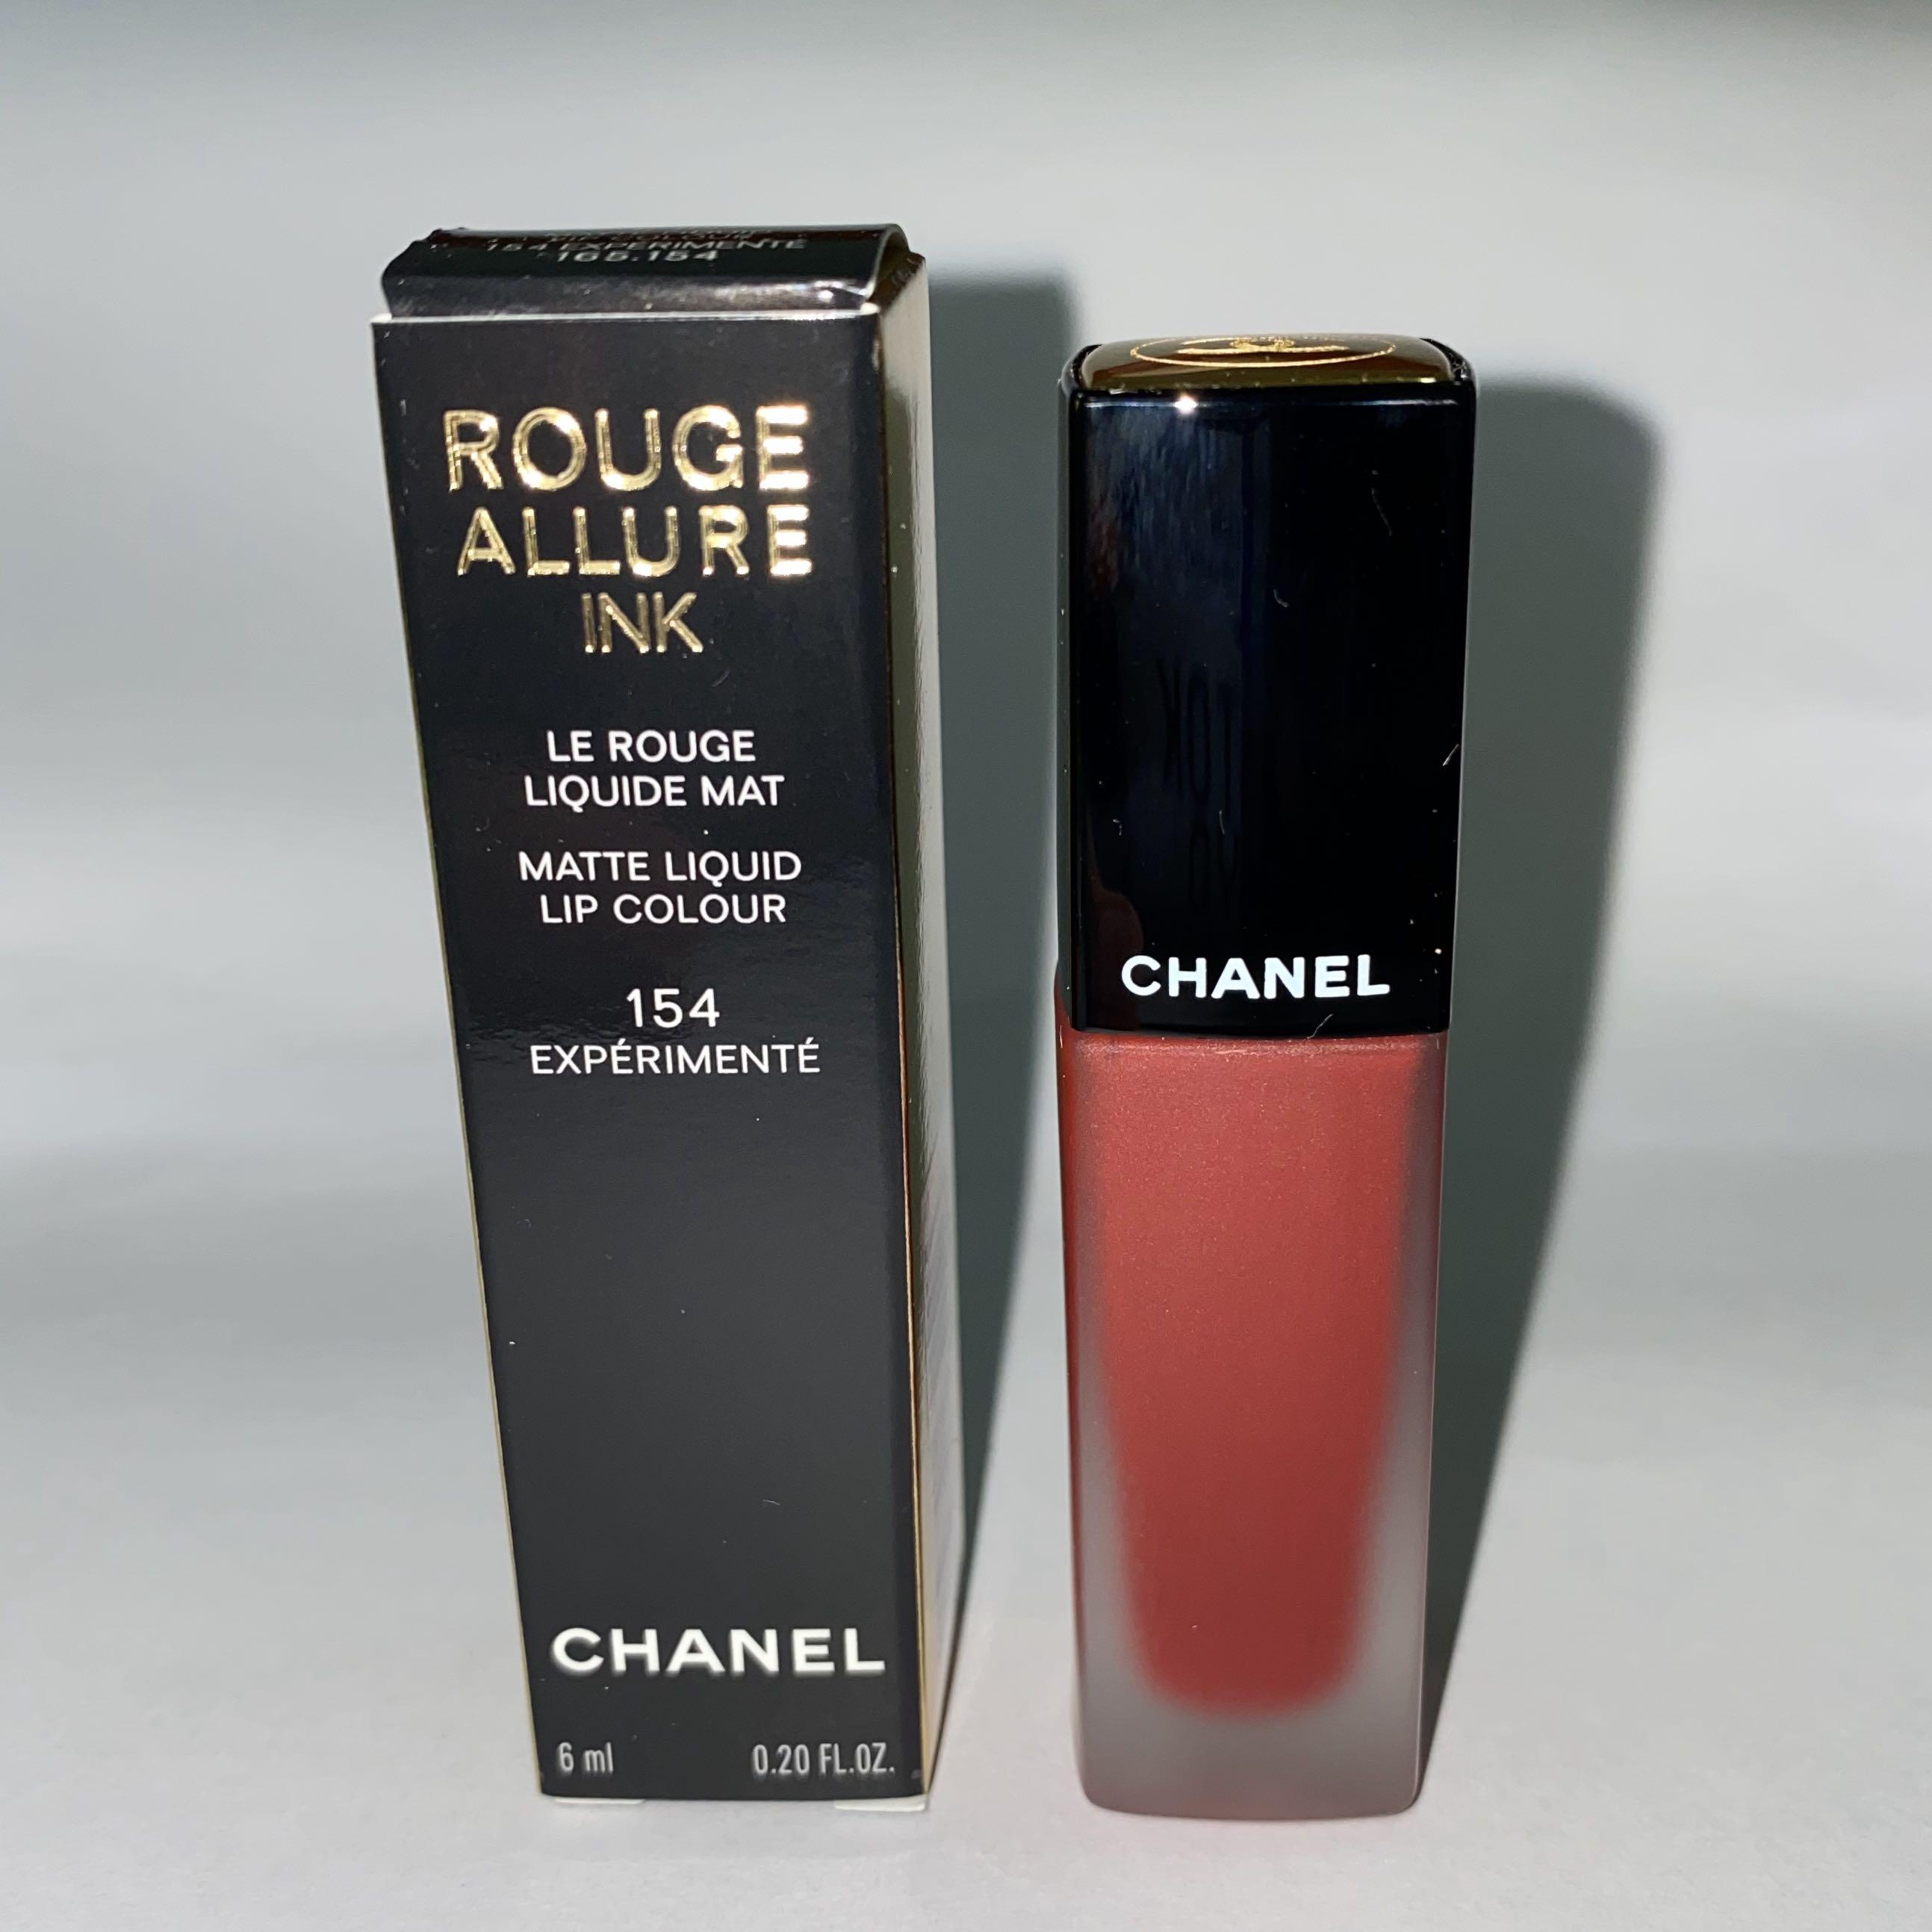 Chanel Rouge Allure Ink Matte Liquid Lip Colour 154 EXPERIMENTE